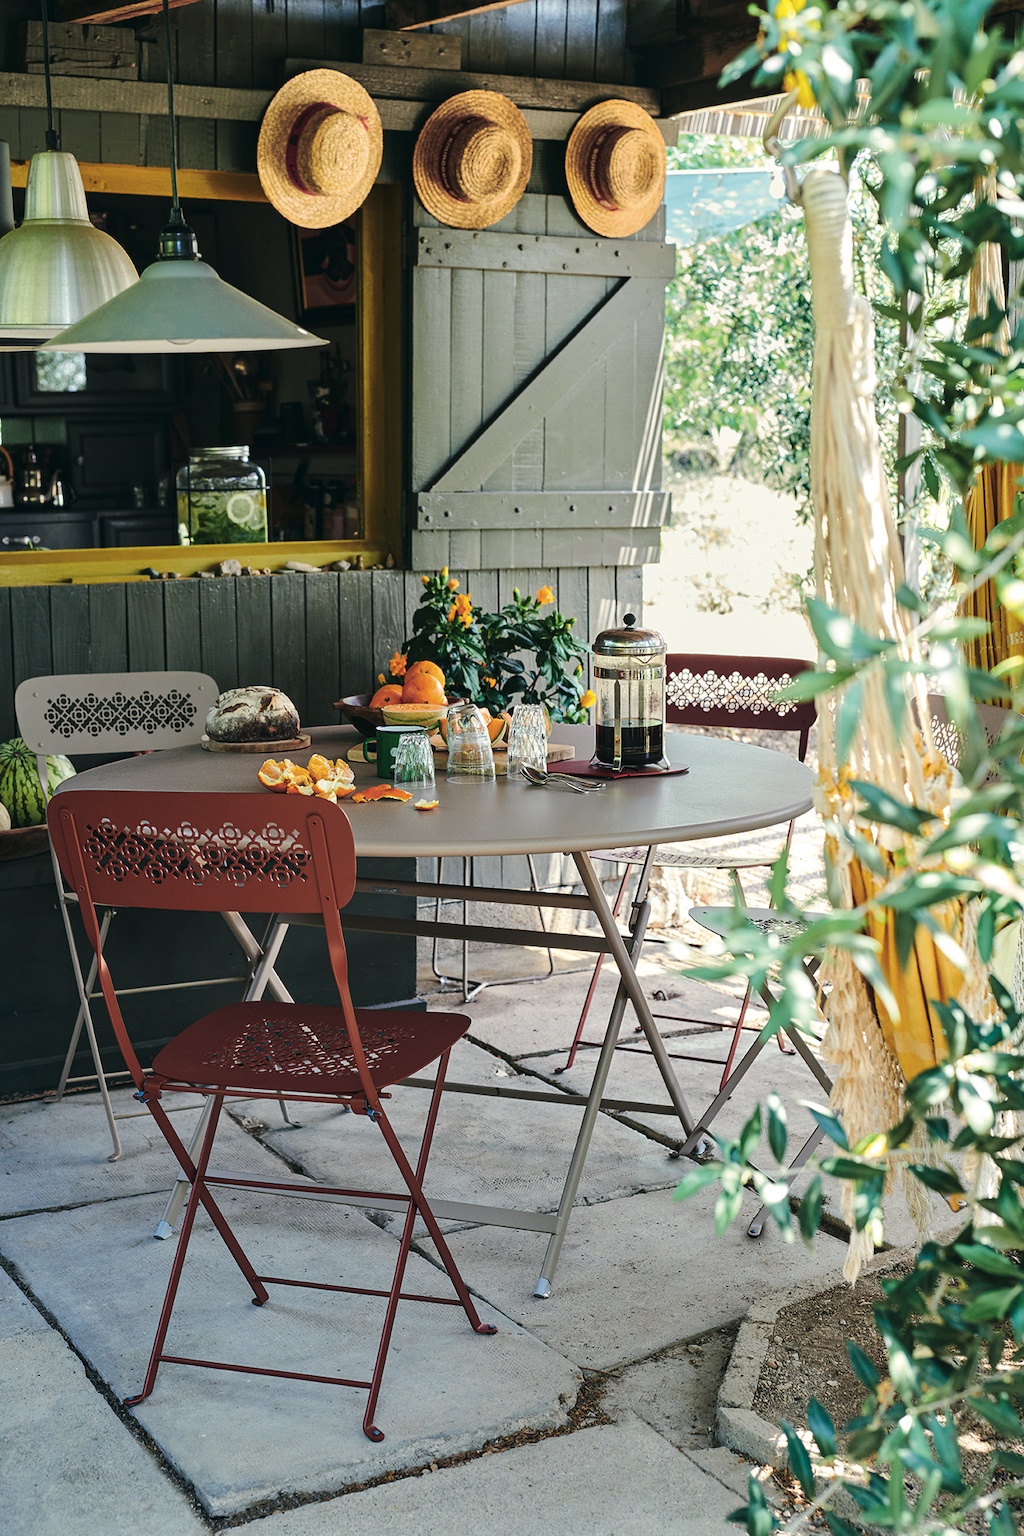 Fermob Caractère Gartentisch auf einer kleinen Terrasse. An einem Fensterladen hängen drei Strohhüte.